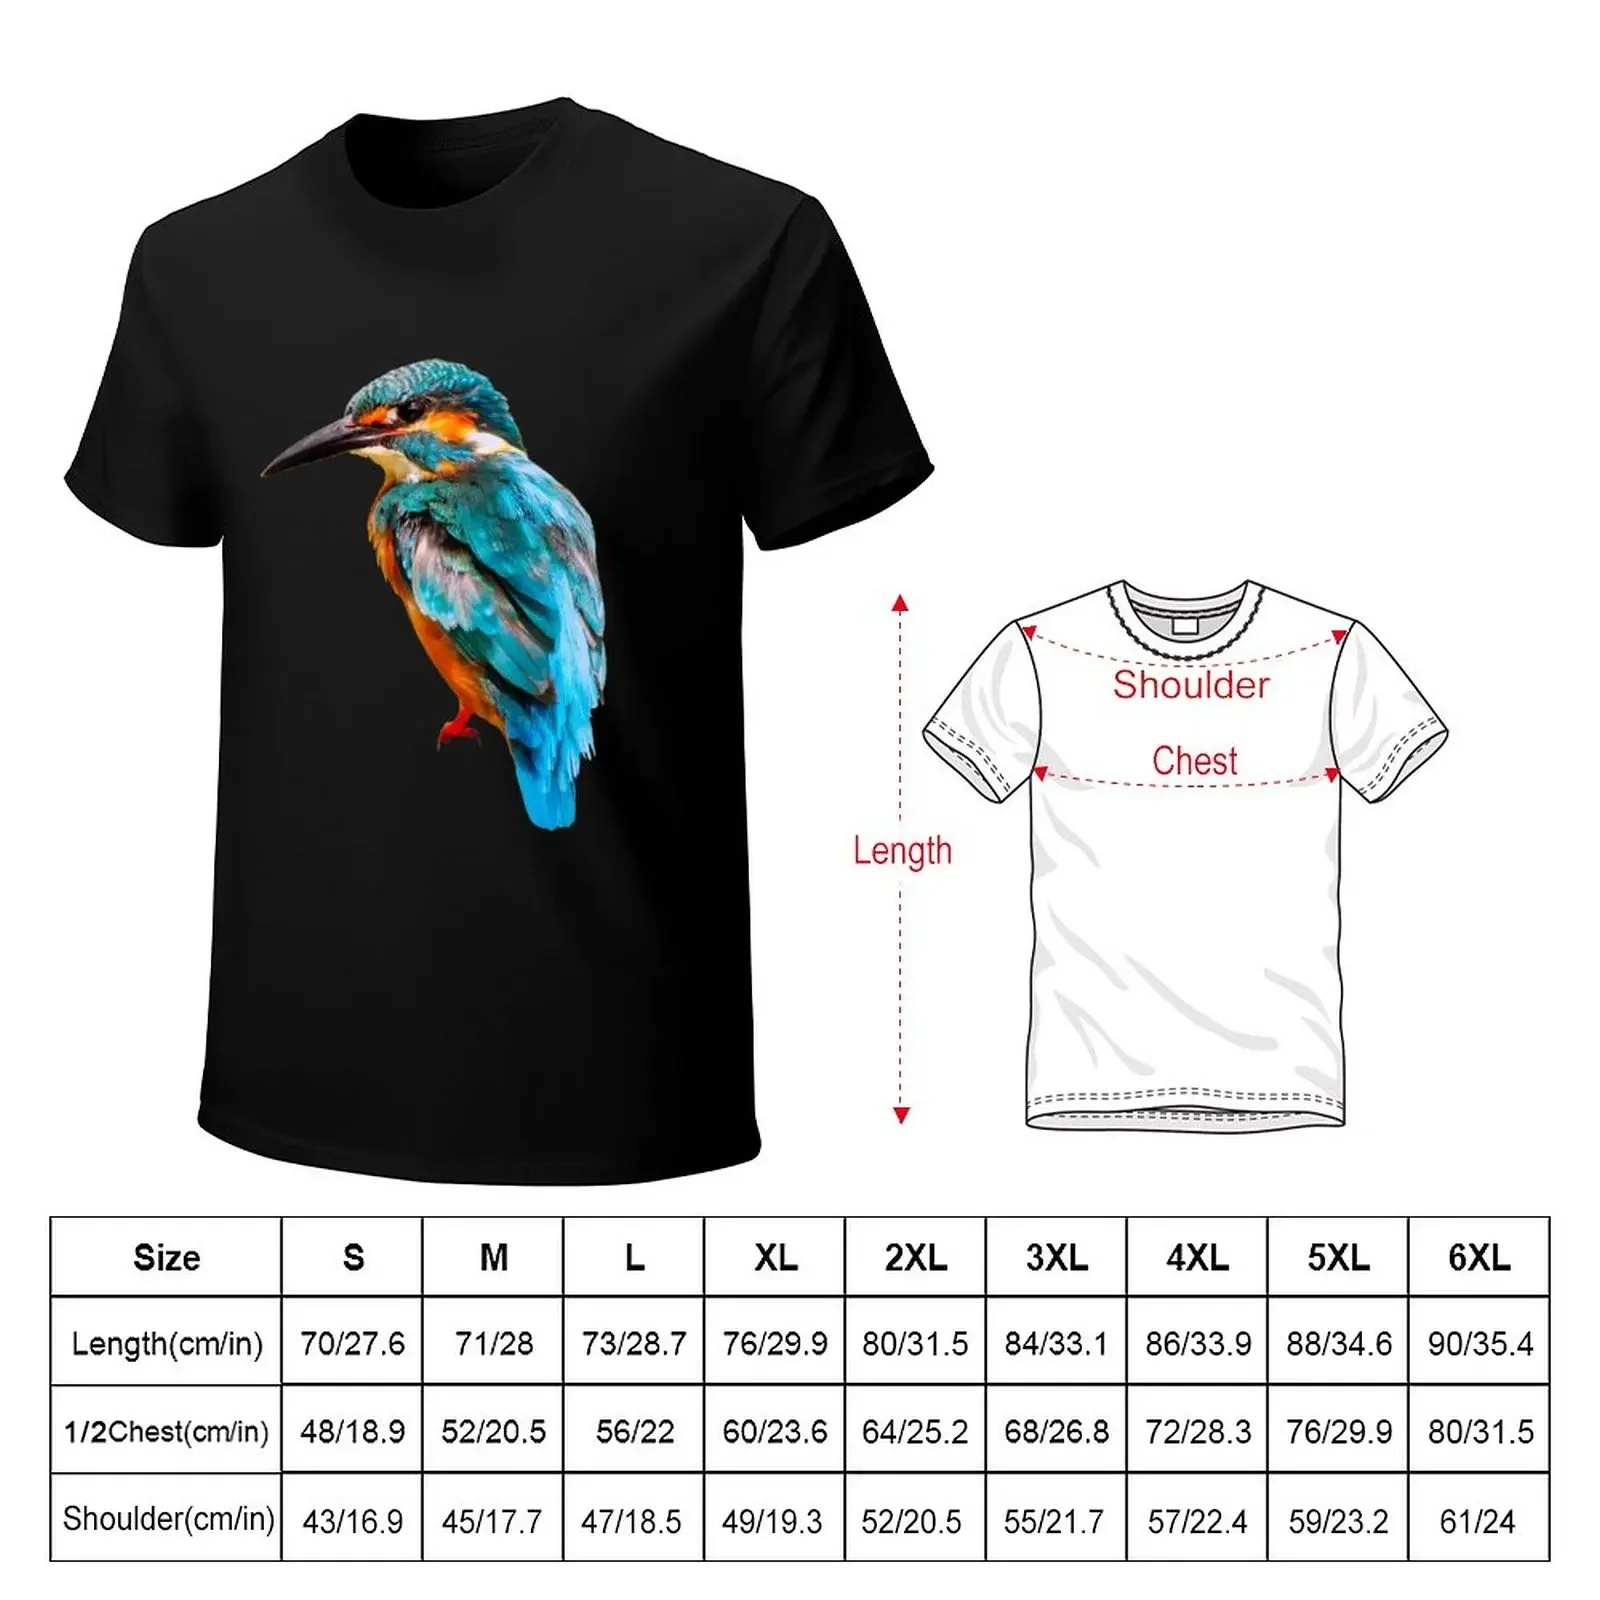 Kingfisher-Camiseta con estampado de animales para hombre, tops bonitos, camisetas informales con estilo